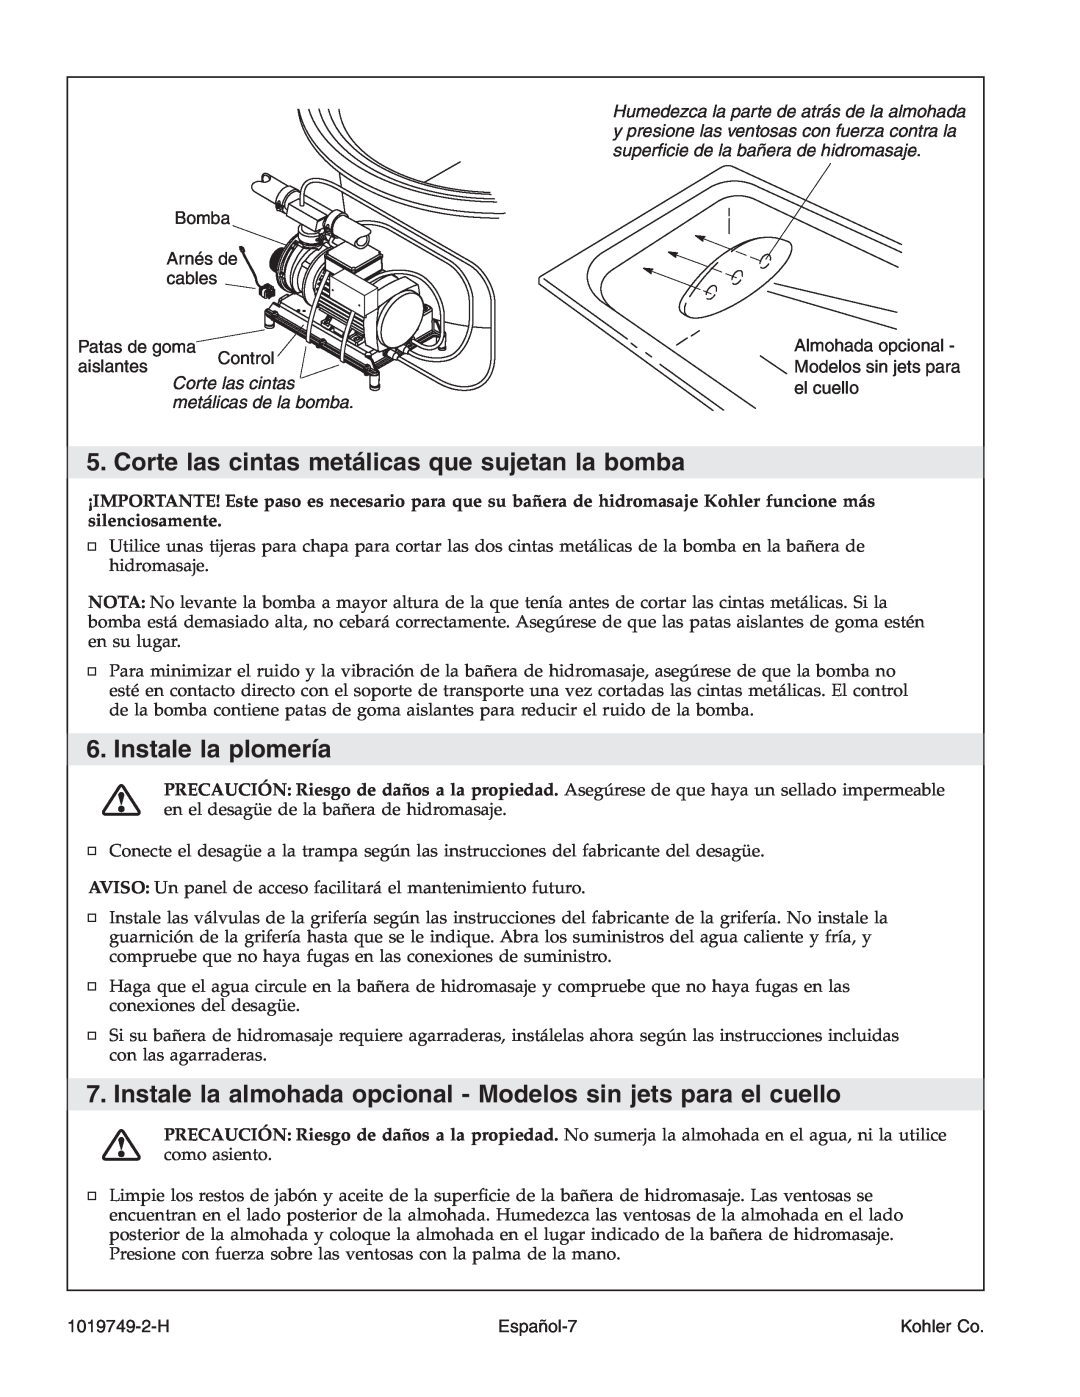 Kohler K-1375 Instale la plomería, Corte las cintas metálicas de la bomba, Bomba Arnés de cables Patas de goma, Español-7 